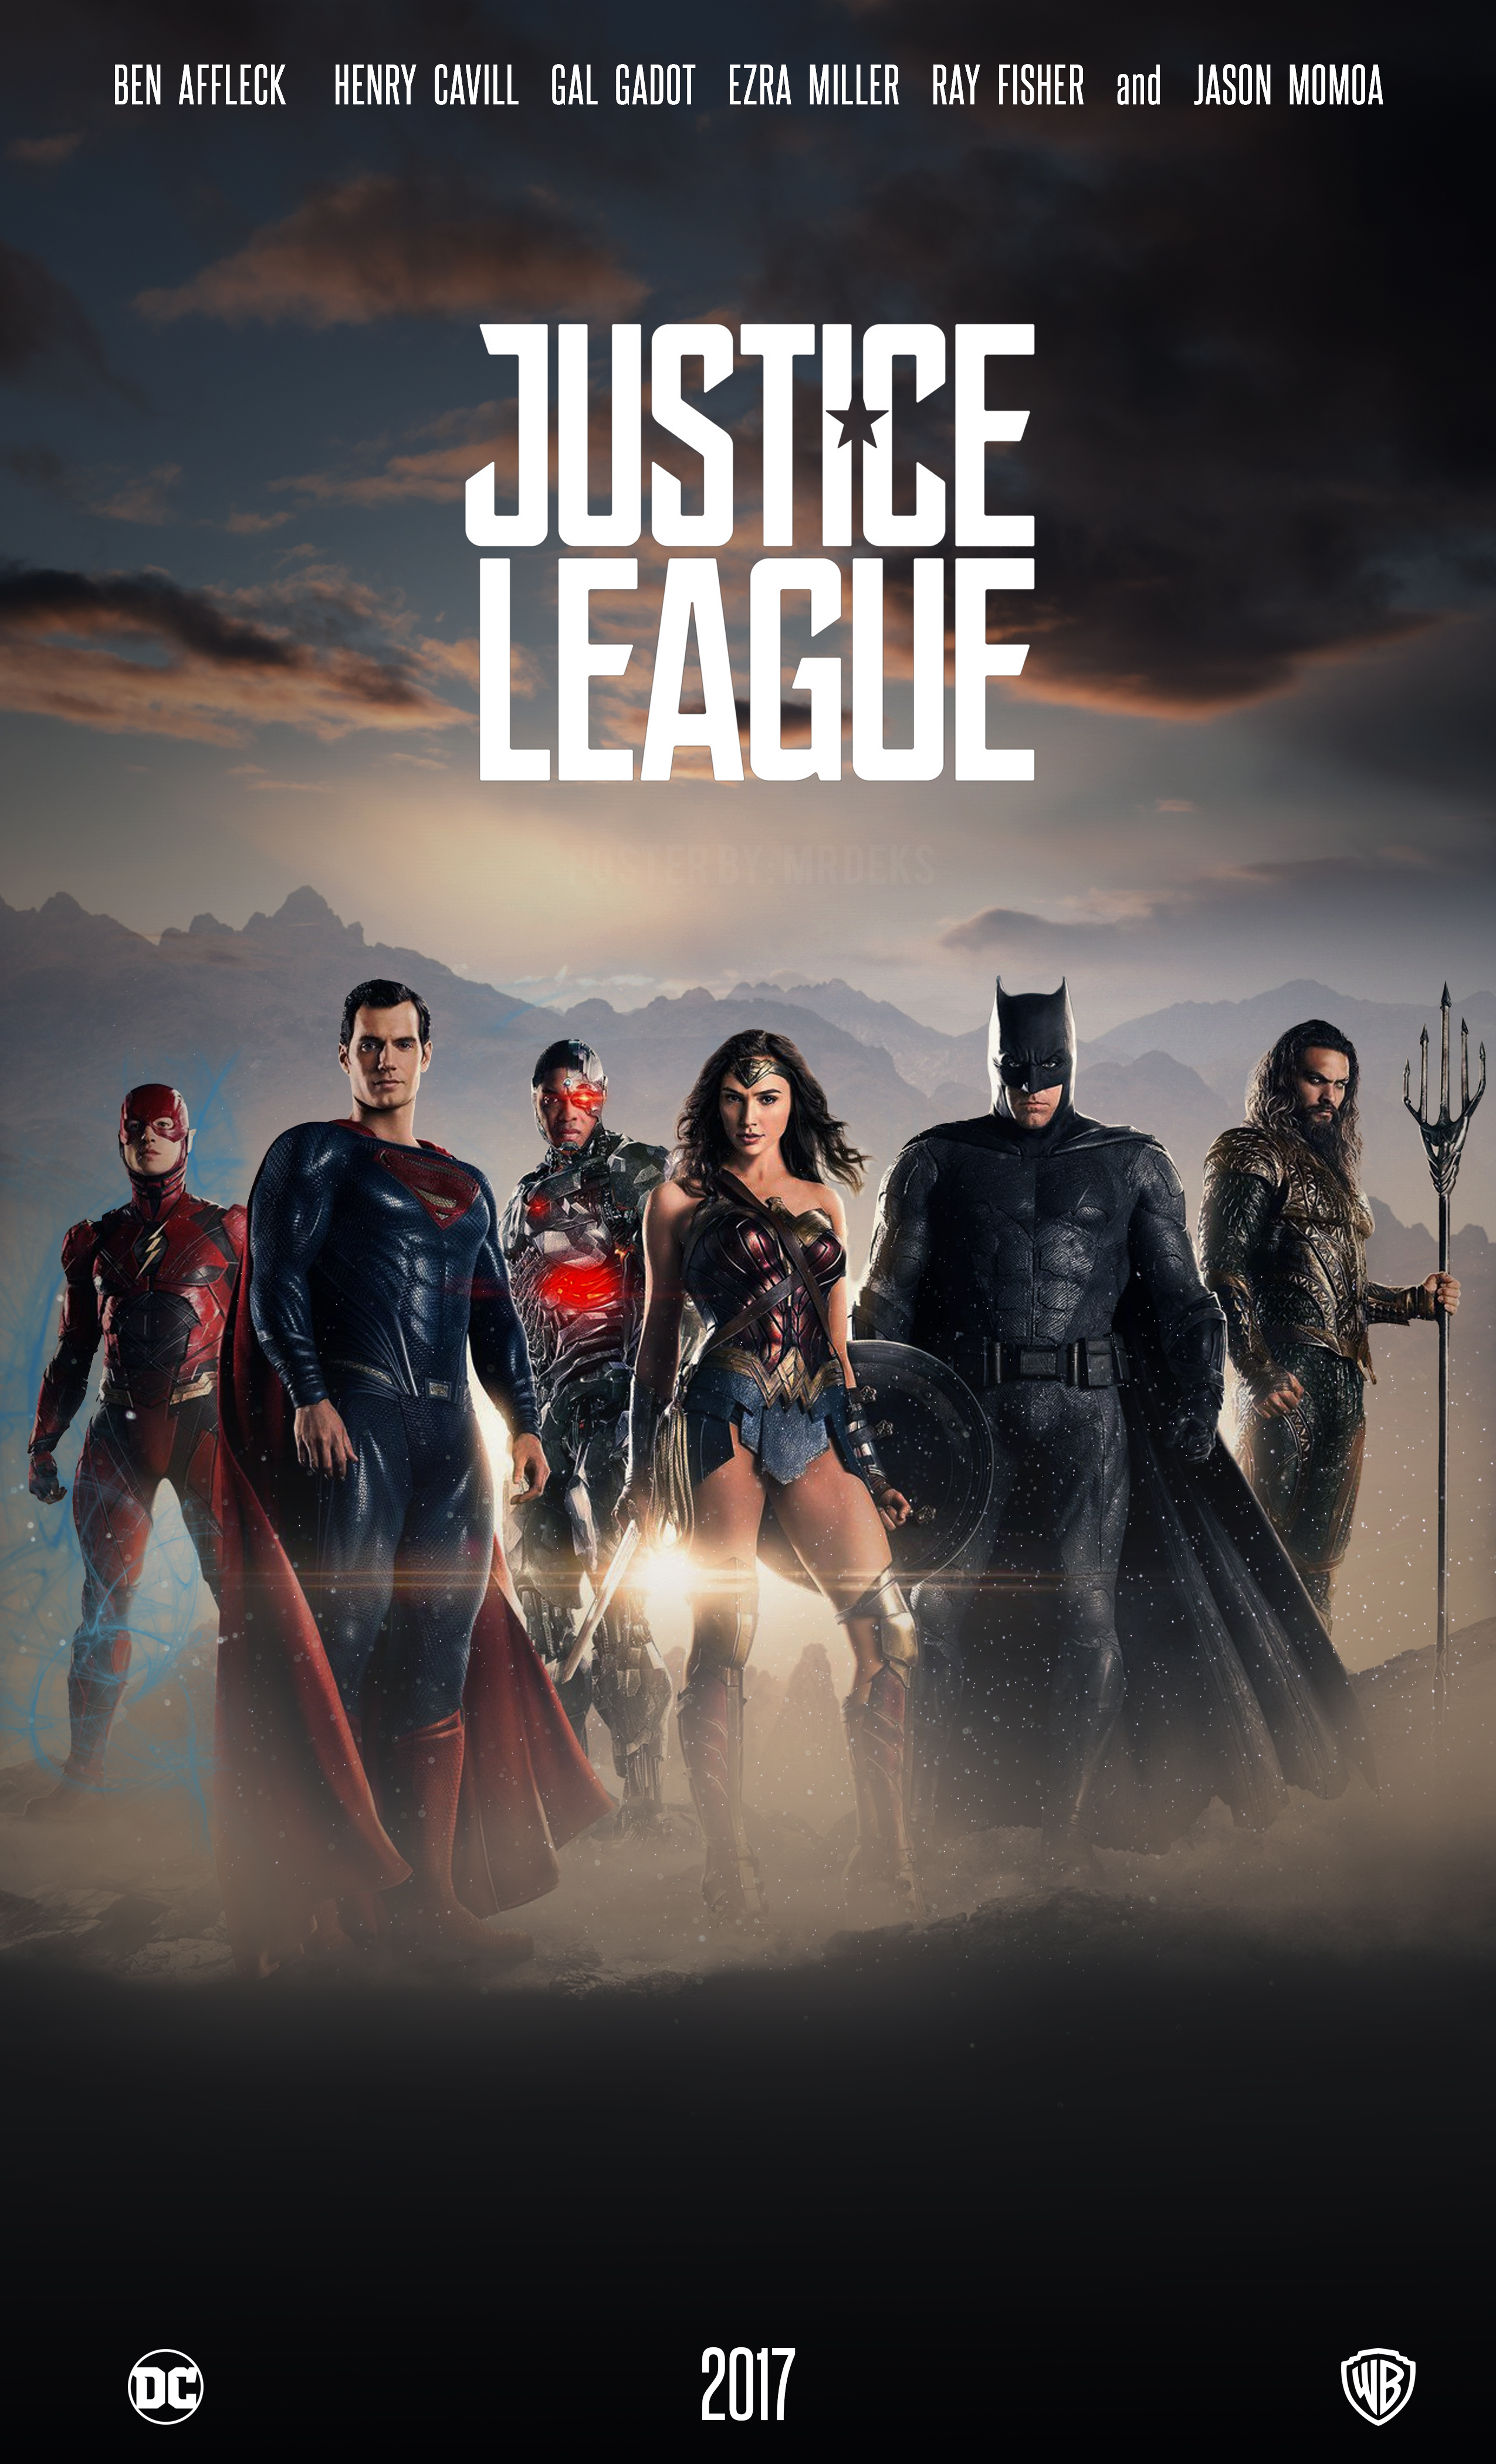 justice_league_movie____2017__poster_by_mrdeks-dabh40c.jpg